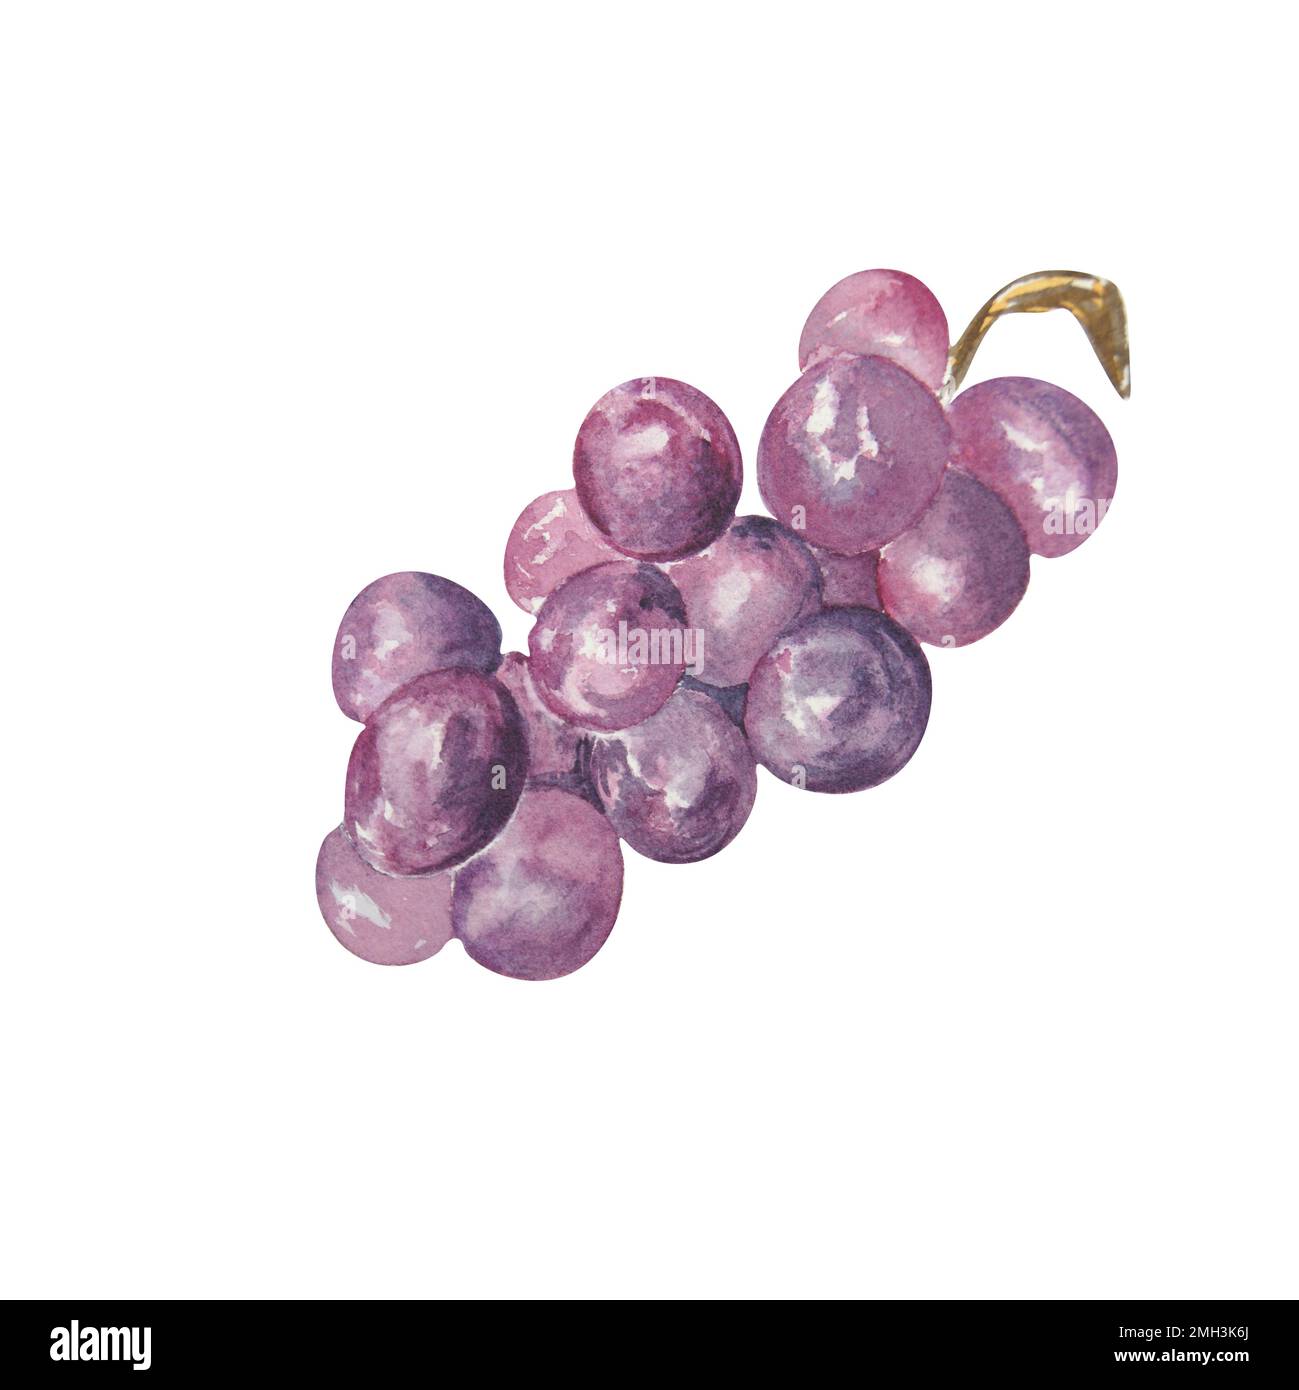 Bouquet d'aquarelles de raisins sur fond blanc. La trame peut être utilisée comme élément pour les projets, les marchandises, les cartes postales et les marques commerciales Banque D'Images